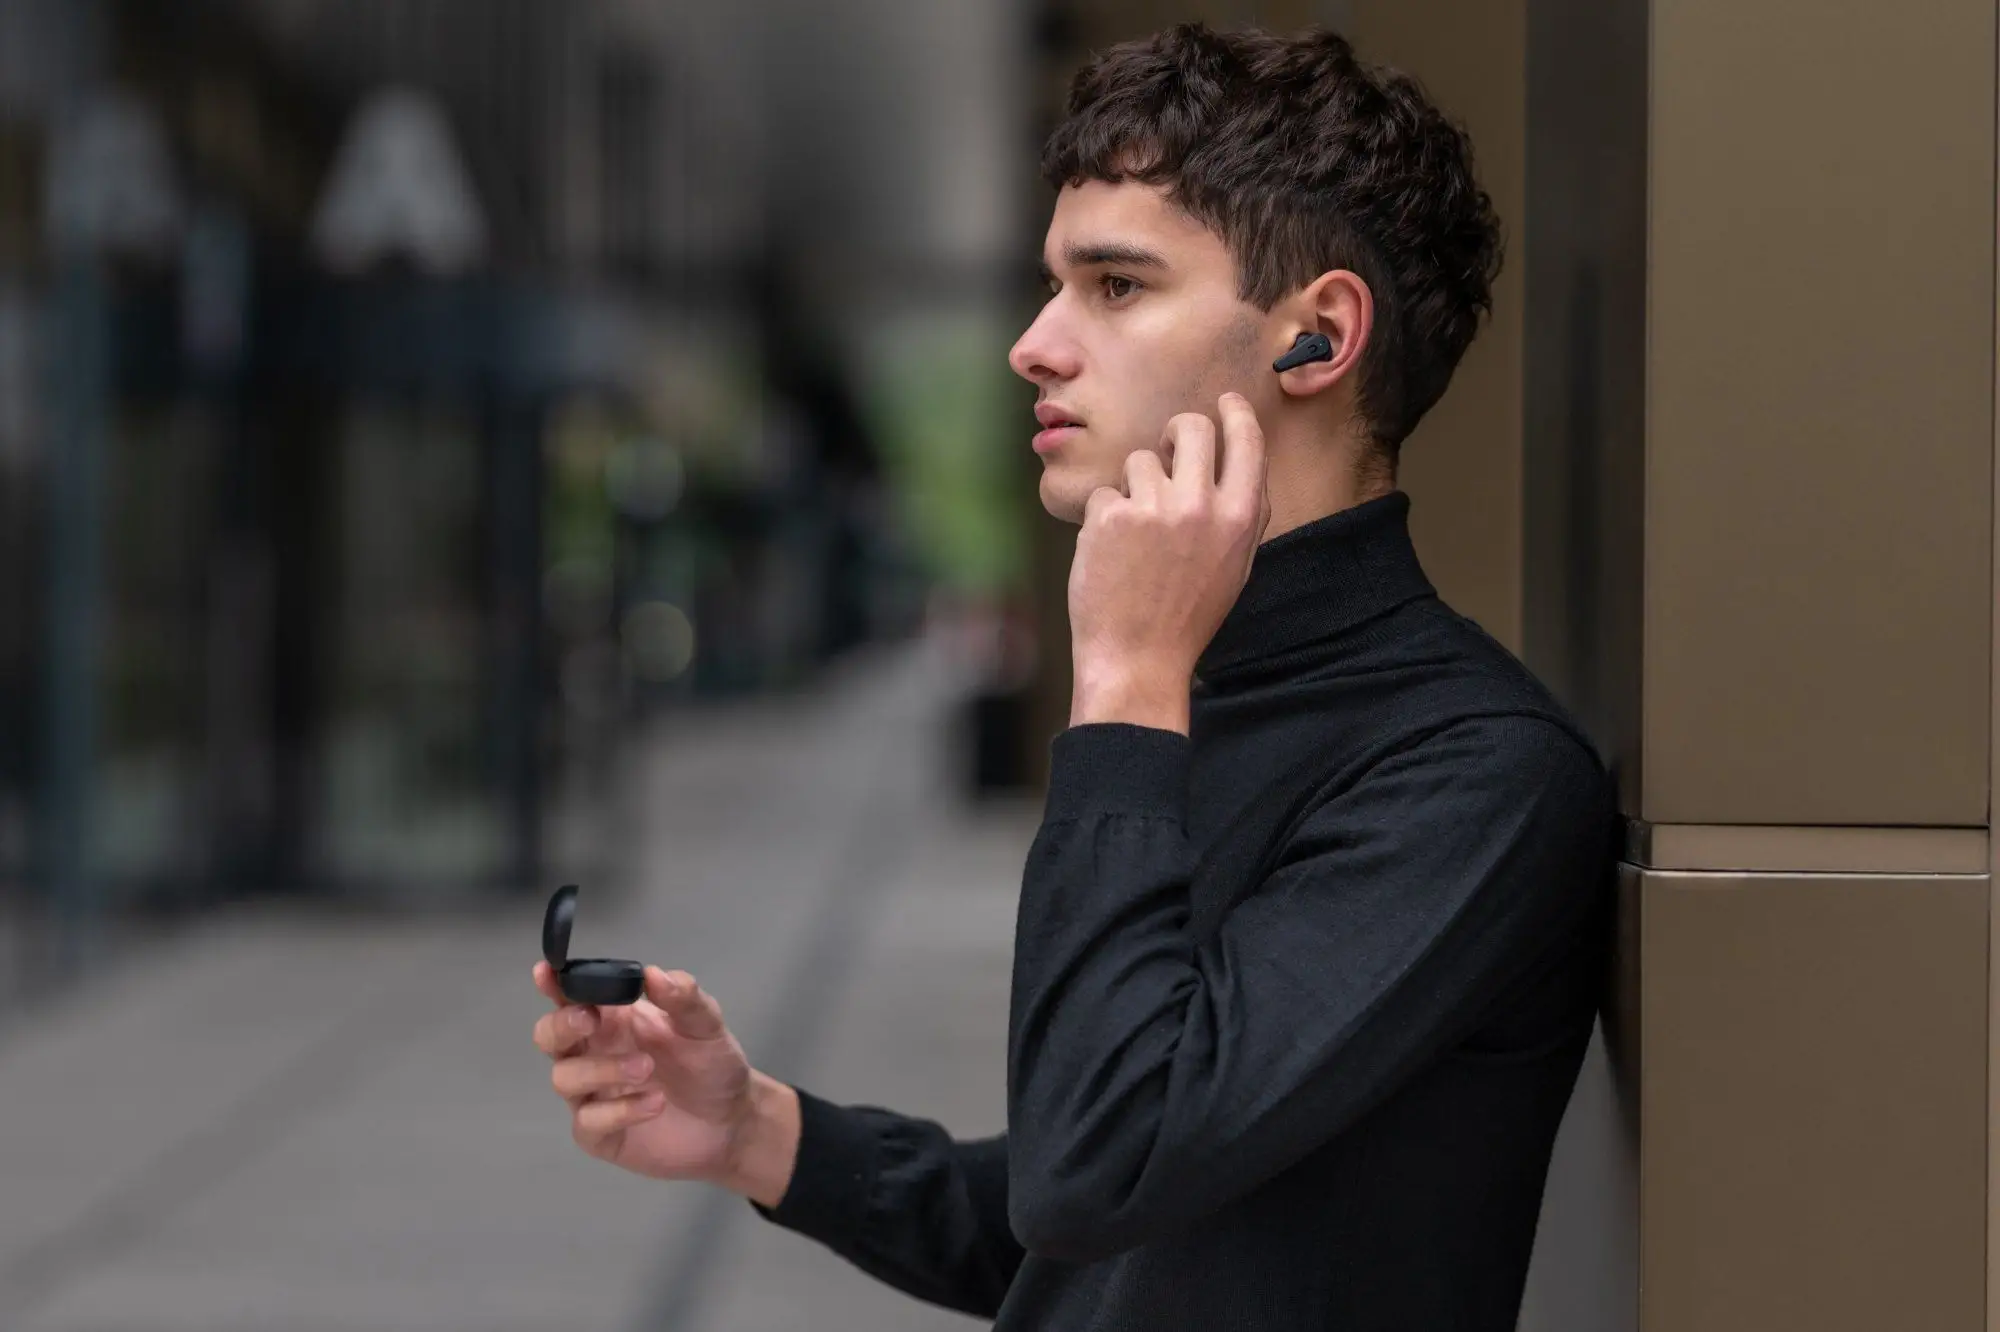 Bezdrôtové In-Ear slúchadlá Niceboy Pins 3 s podporou Bluetooth 5.1 sú navrhnuté tak, aby vás nijako neobmedzovali pri pohybe či pri iných aktivitách.